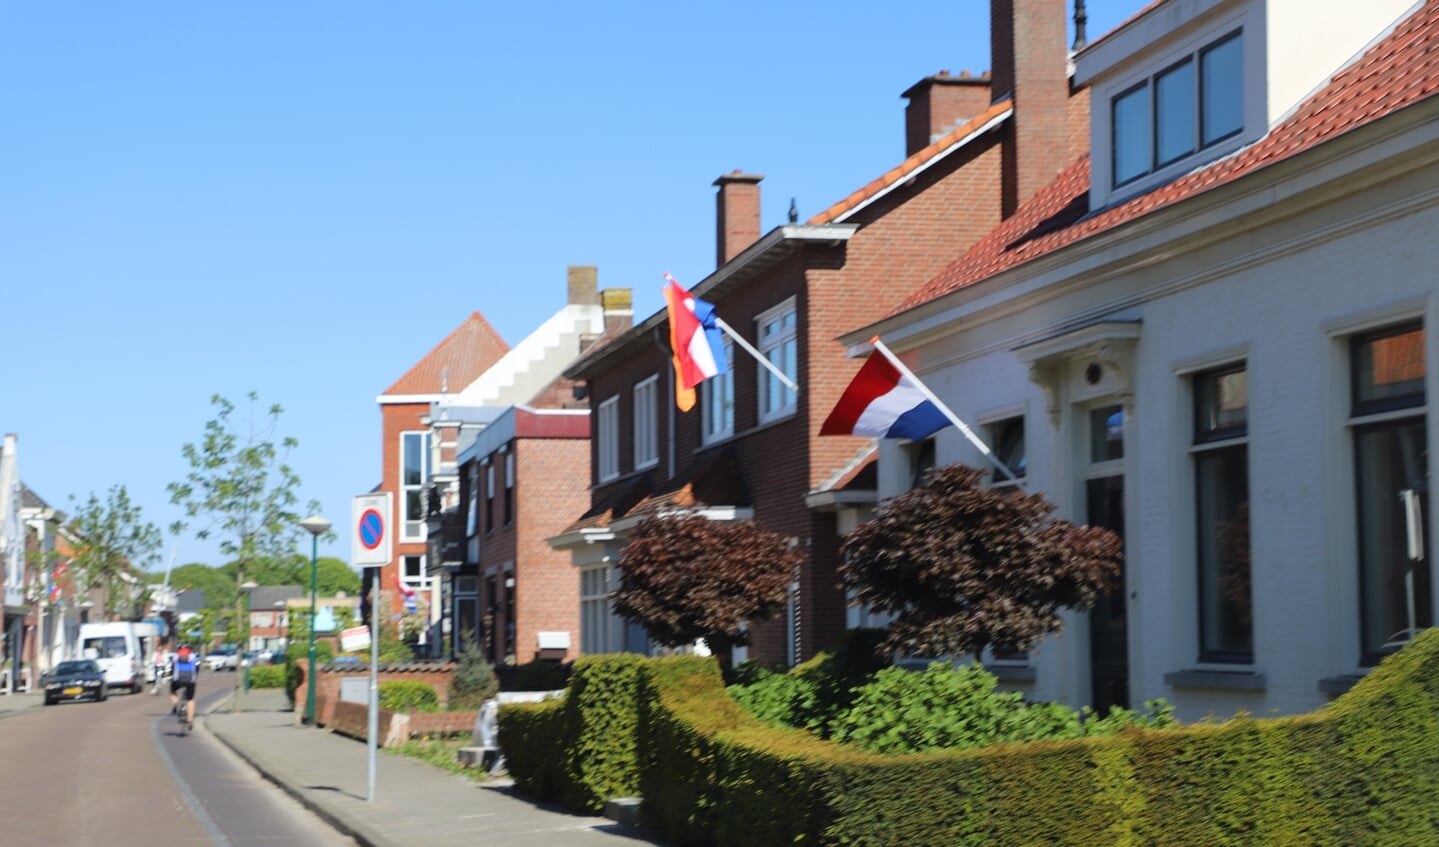 Vlaggen op Bevrijdingsdag in dorp Ossendrecht.